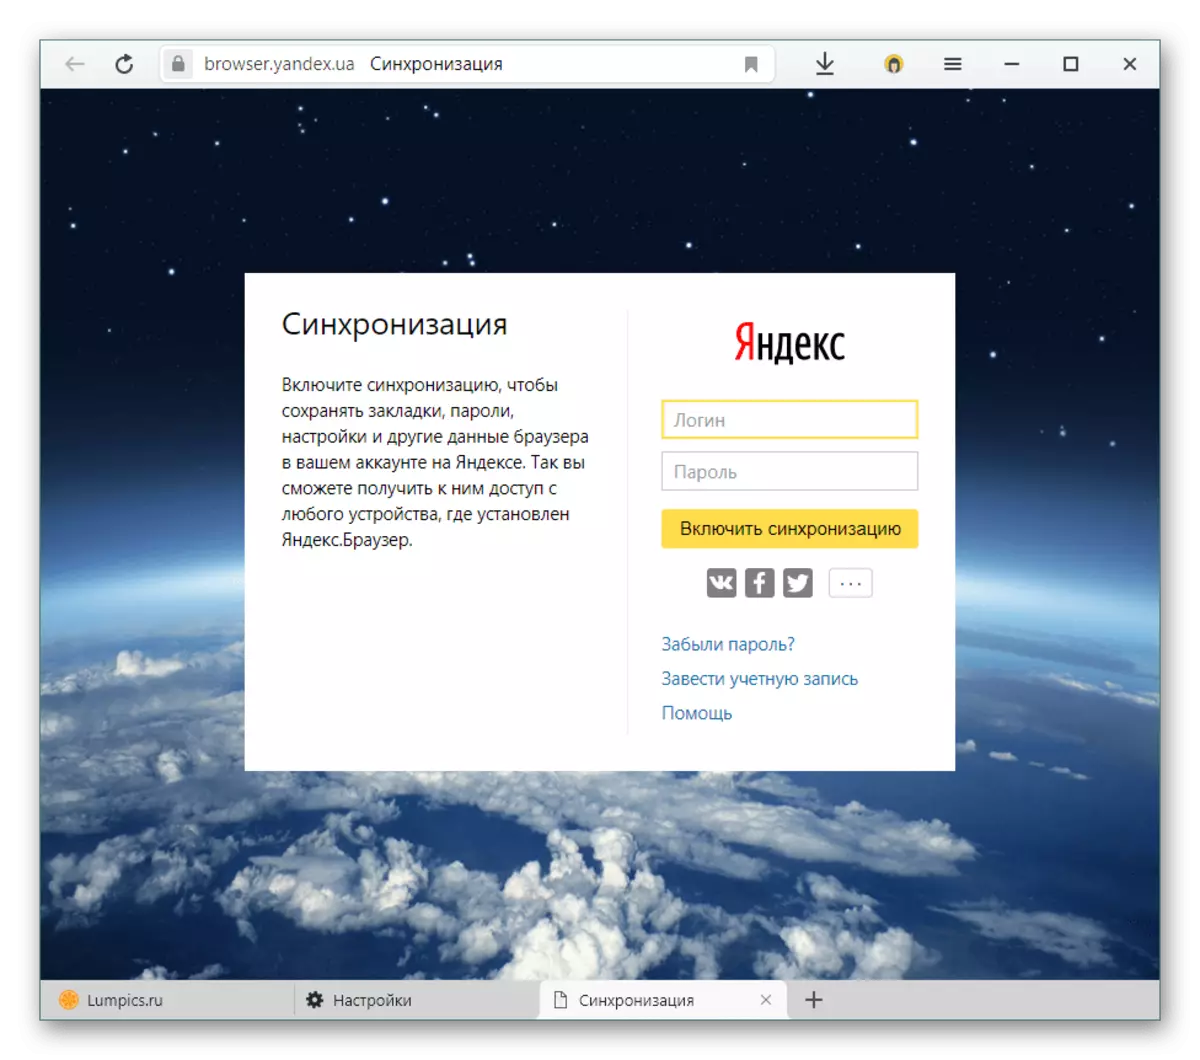 Awtorizzazzjoni fil-kont Yandex għas-sinkronizzazzjoni f'Yandex.Browser